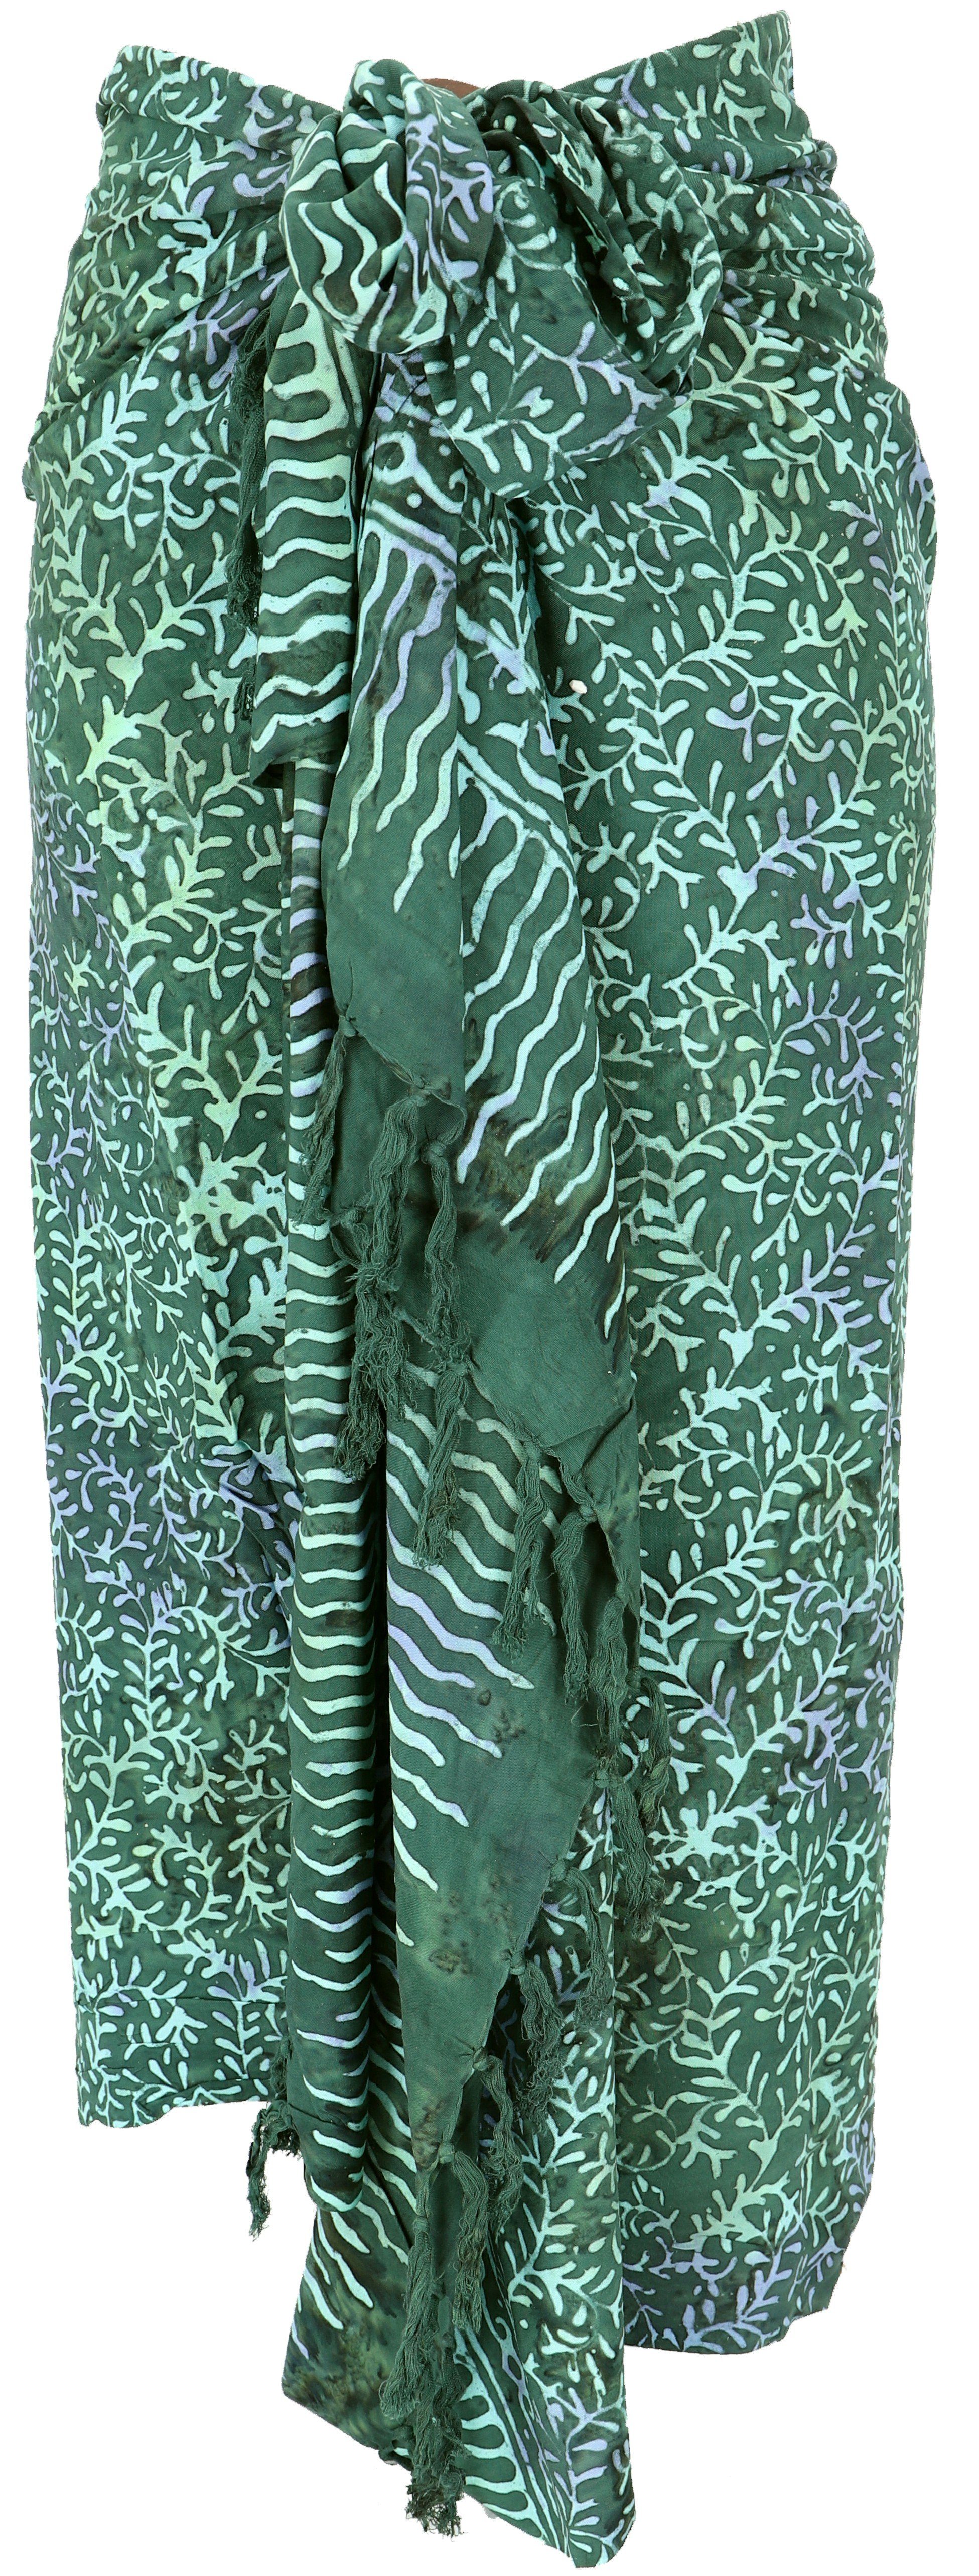 5/grün Batik Design Bali Wickelrock, Sarongkleid, Sarong,.. Sarong Guru-Shop